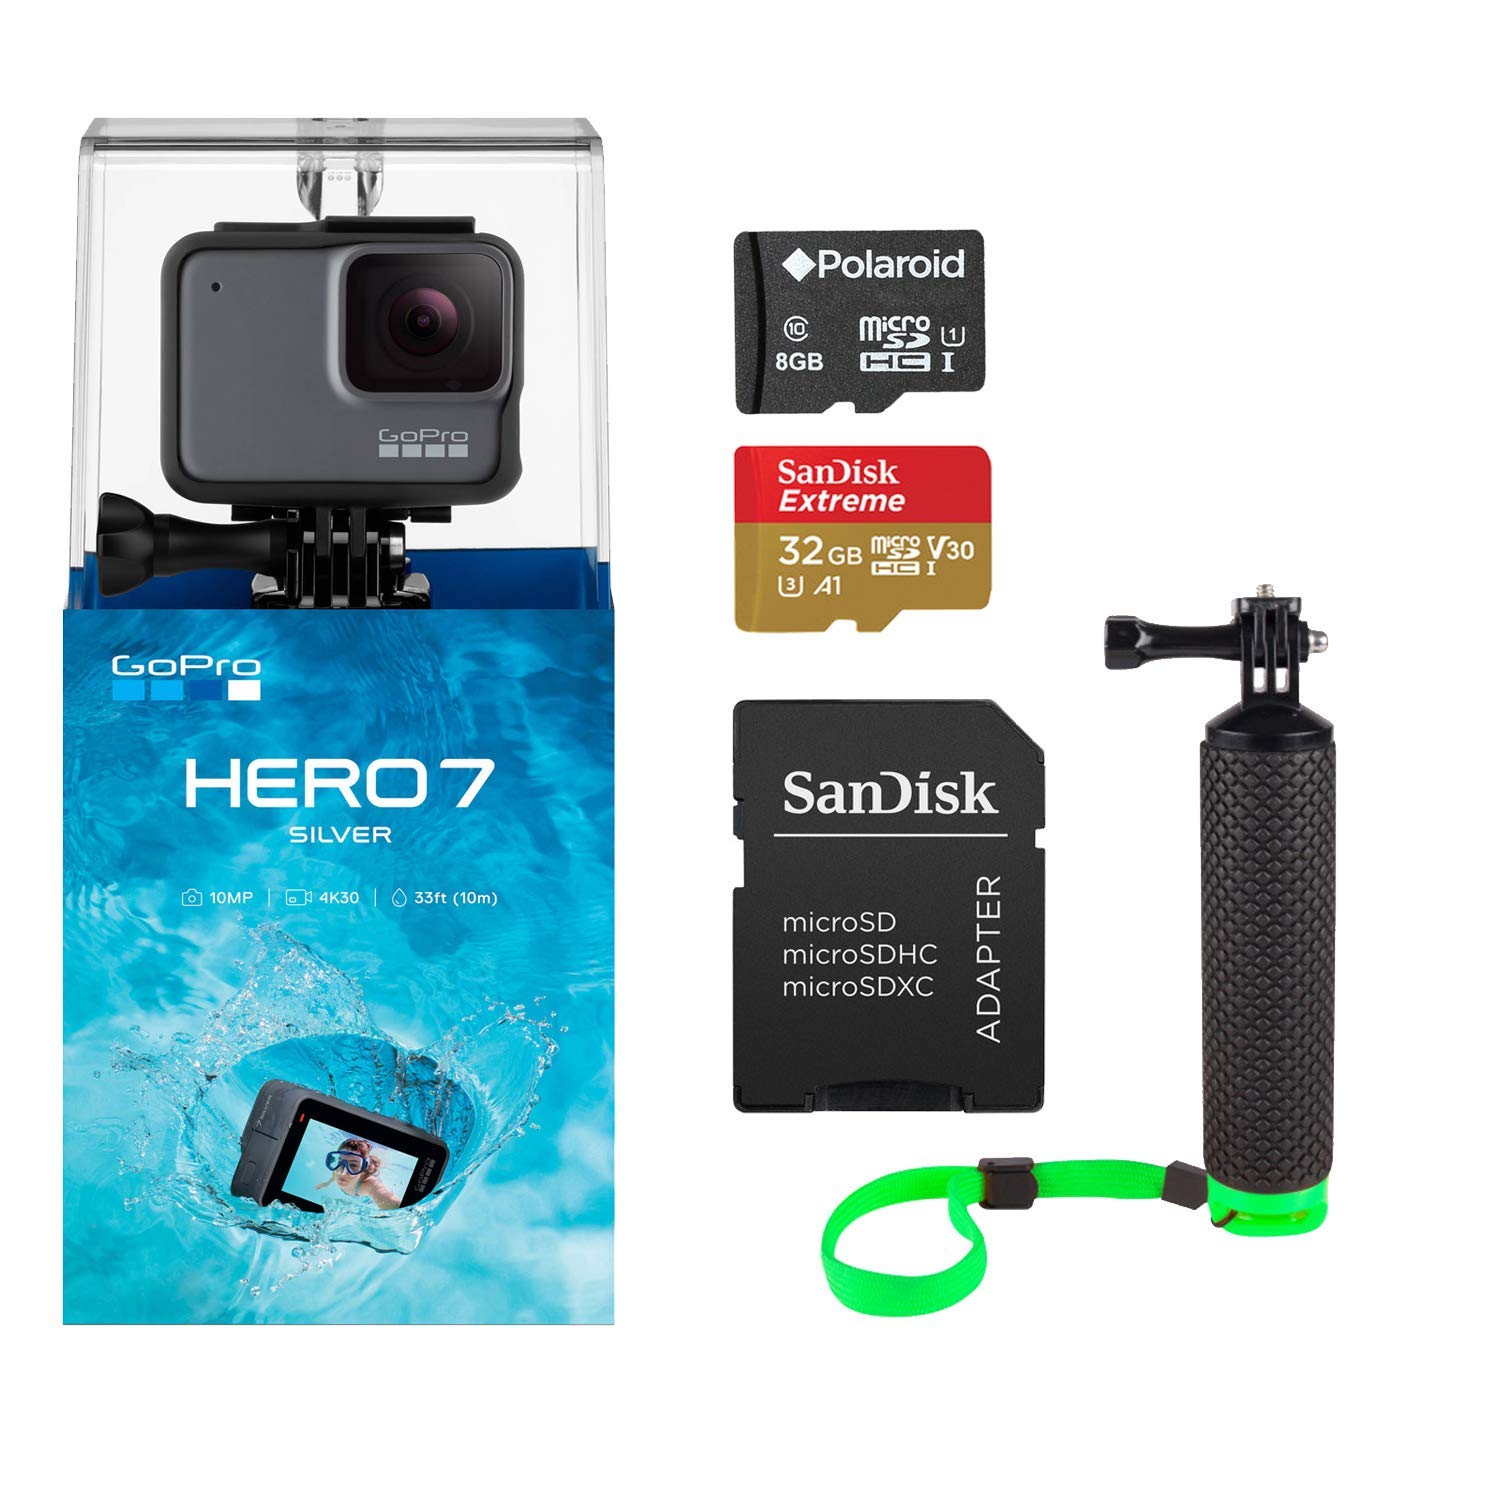 CAMARA GOPRO HERO7 SILVER (Tarjeta de memoria MicroSDHC Polaroid de 8GB- Manija flotante verde con correa para la muñeca - Tarjeta de memoria USD MicroSDHC de 32GB Sandisk Extreme de 32GB)